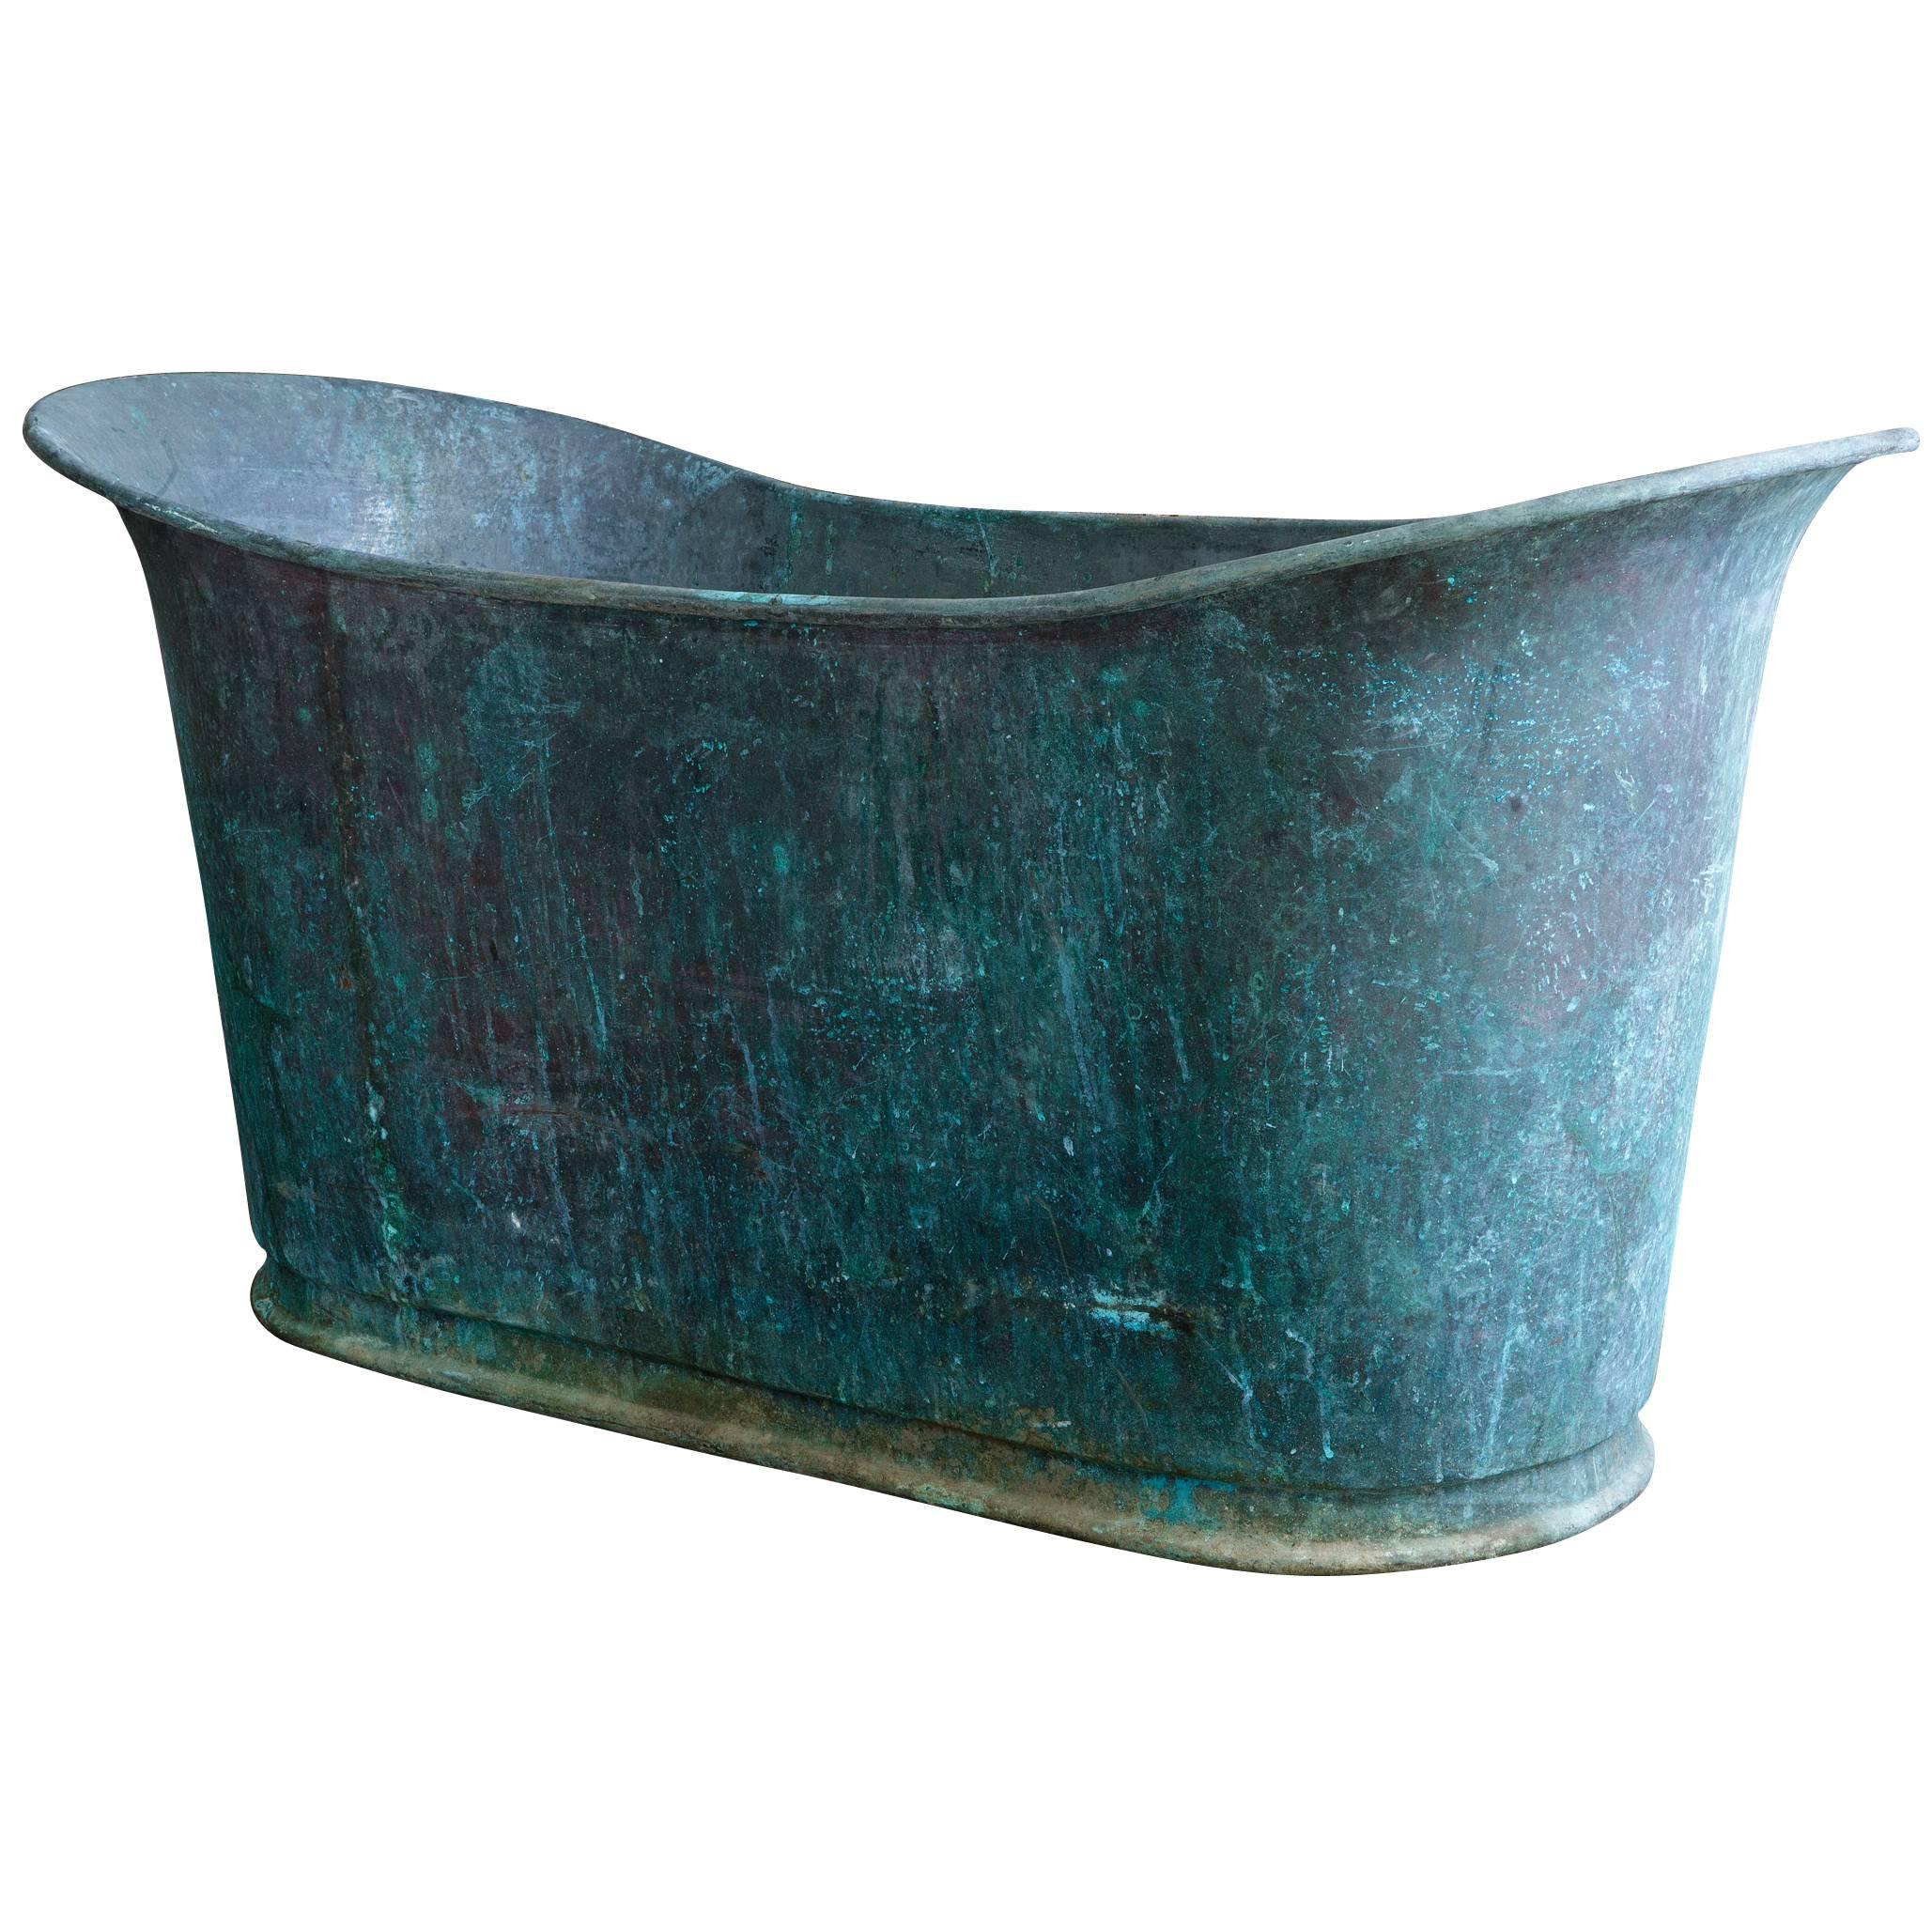 Very Rare Antique Copper Bathtub "Bain Bateau"